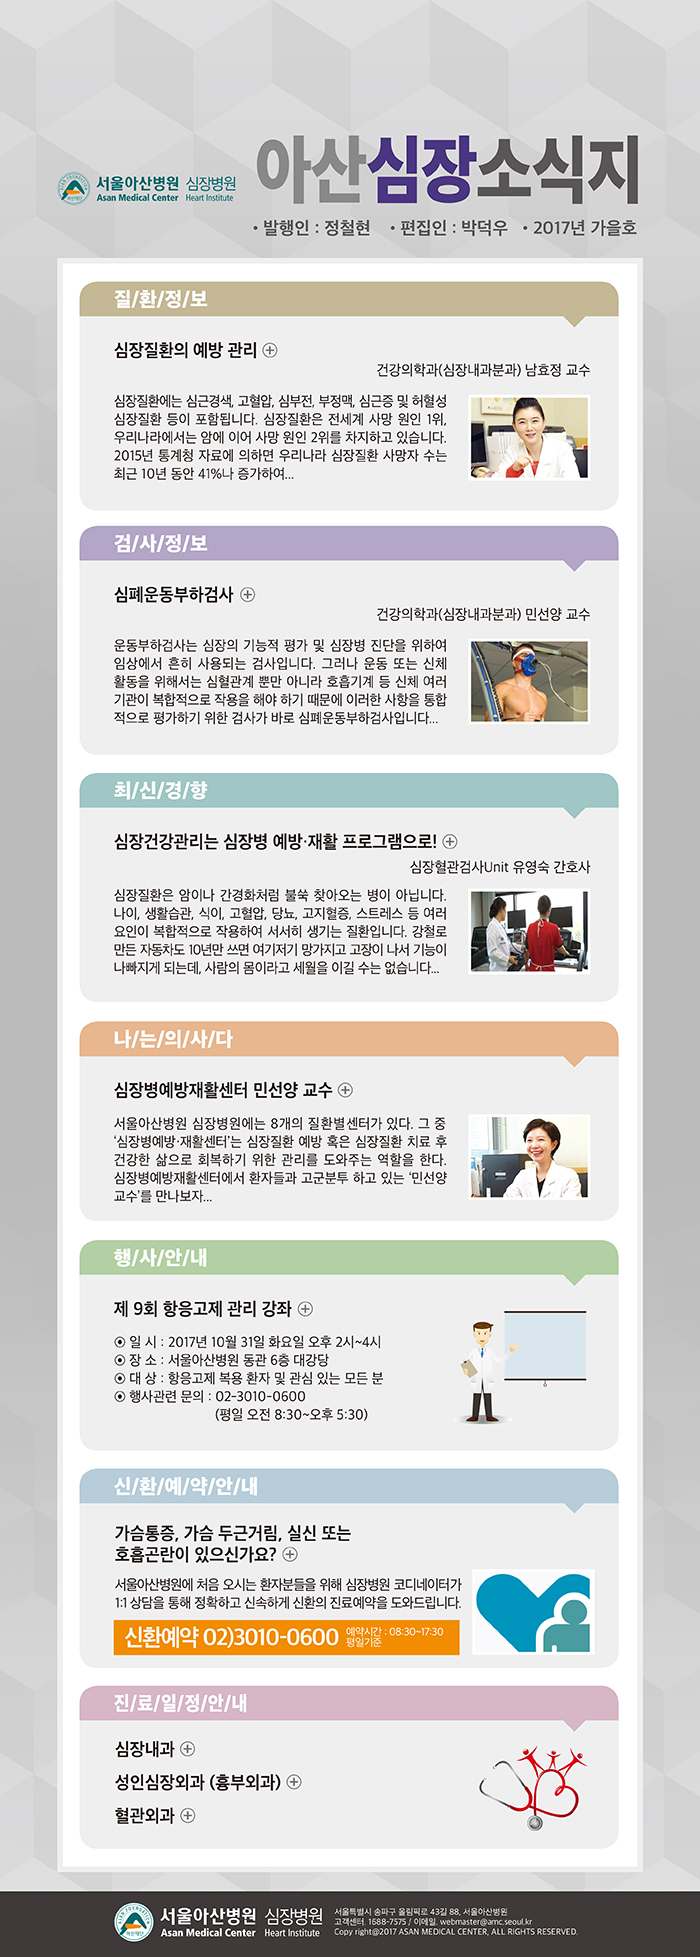 서울아산병원 심장병원 CARDIOLOGY UPDATE - 2017년 9월